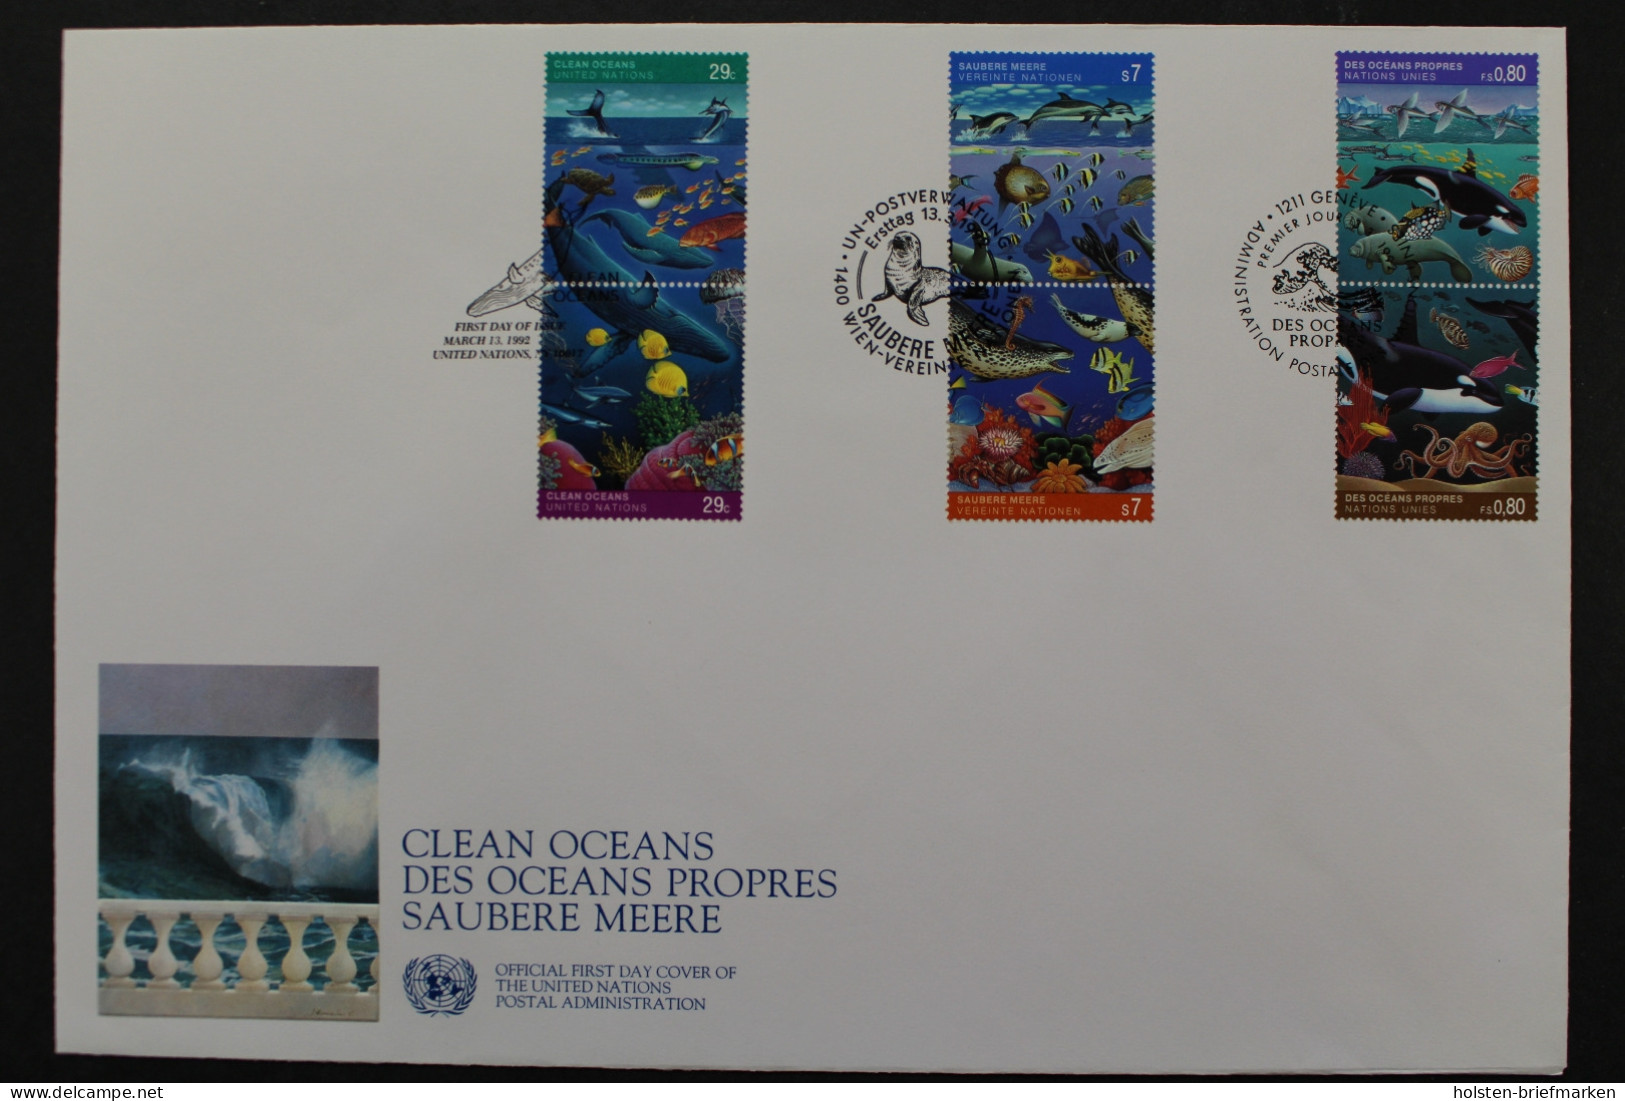 UNO Triobrief: Saubere Meere, 1992 - Gemeinschaftsausgaben New York/Genf/Wien